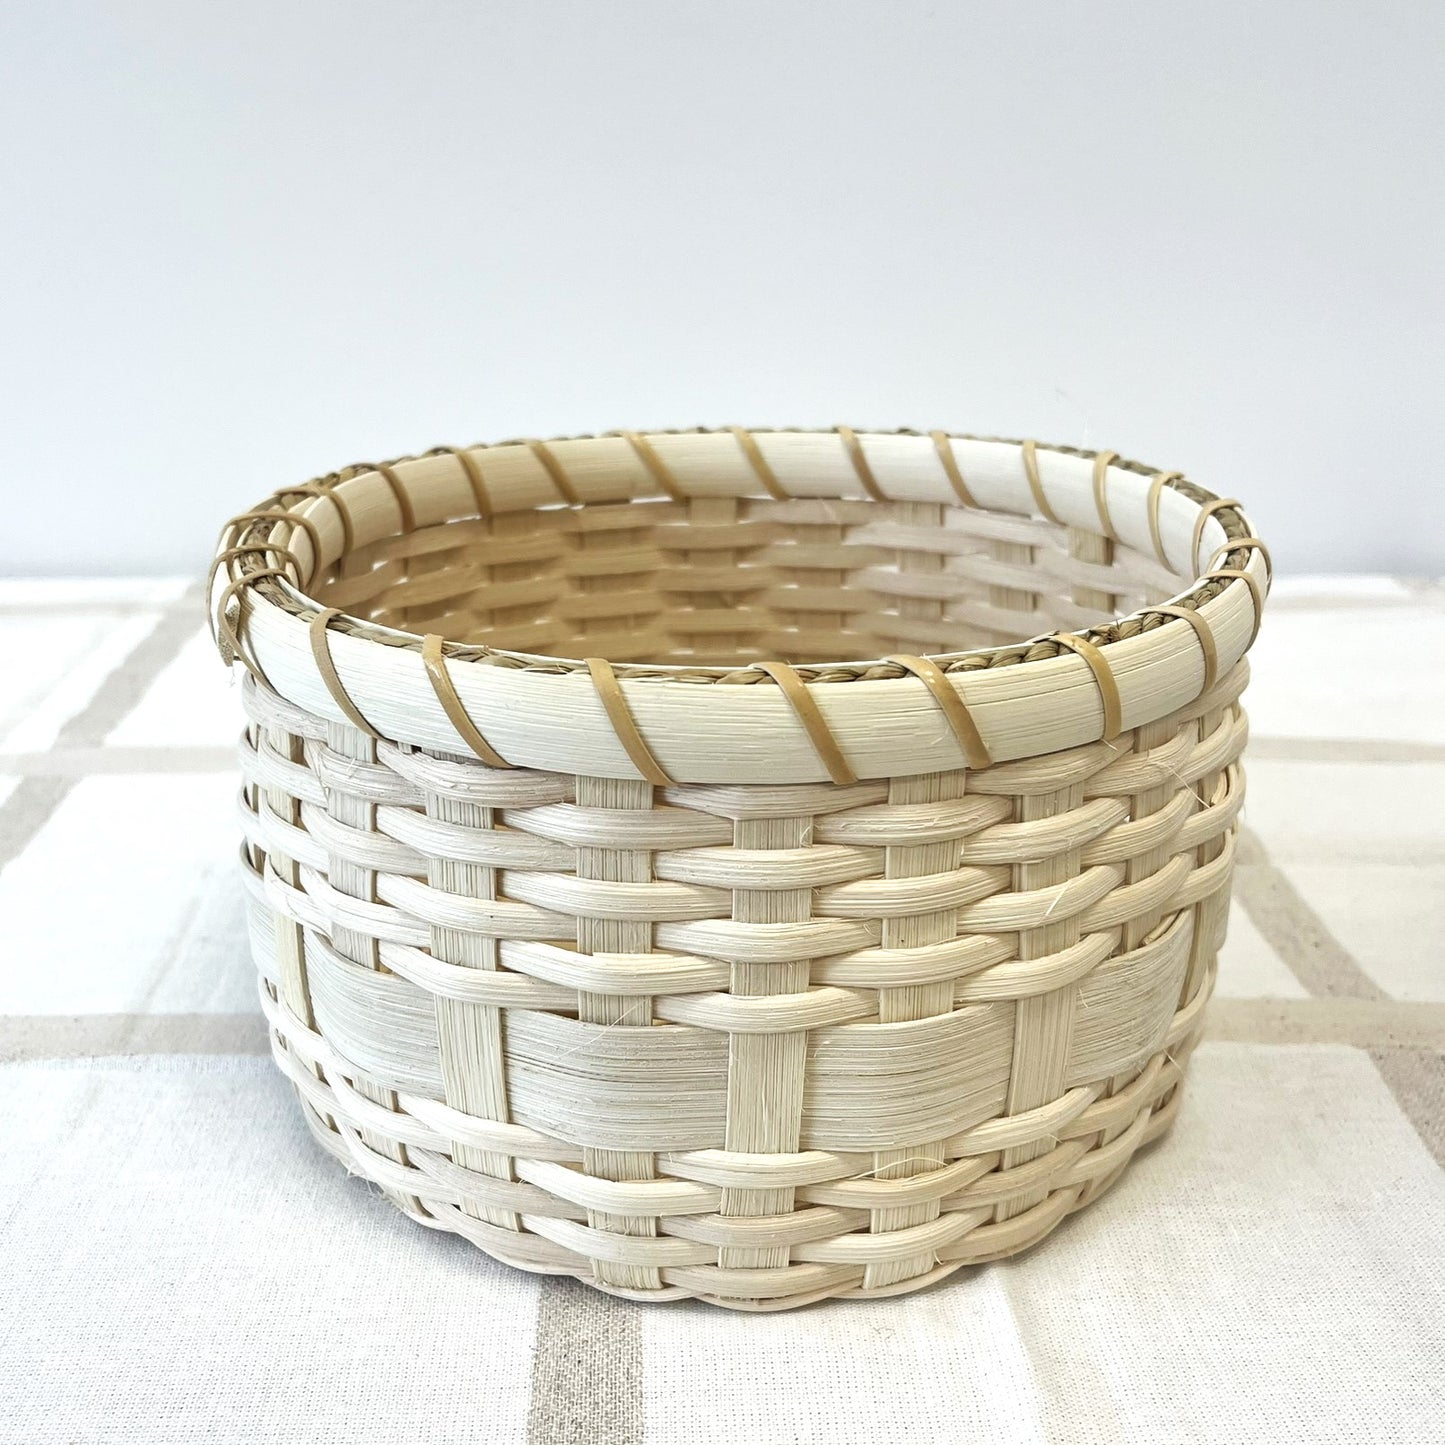 5/19 - Basket Weaving for Beginners